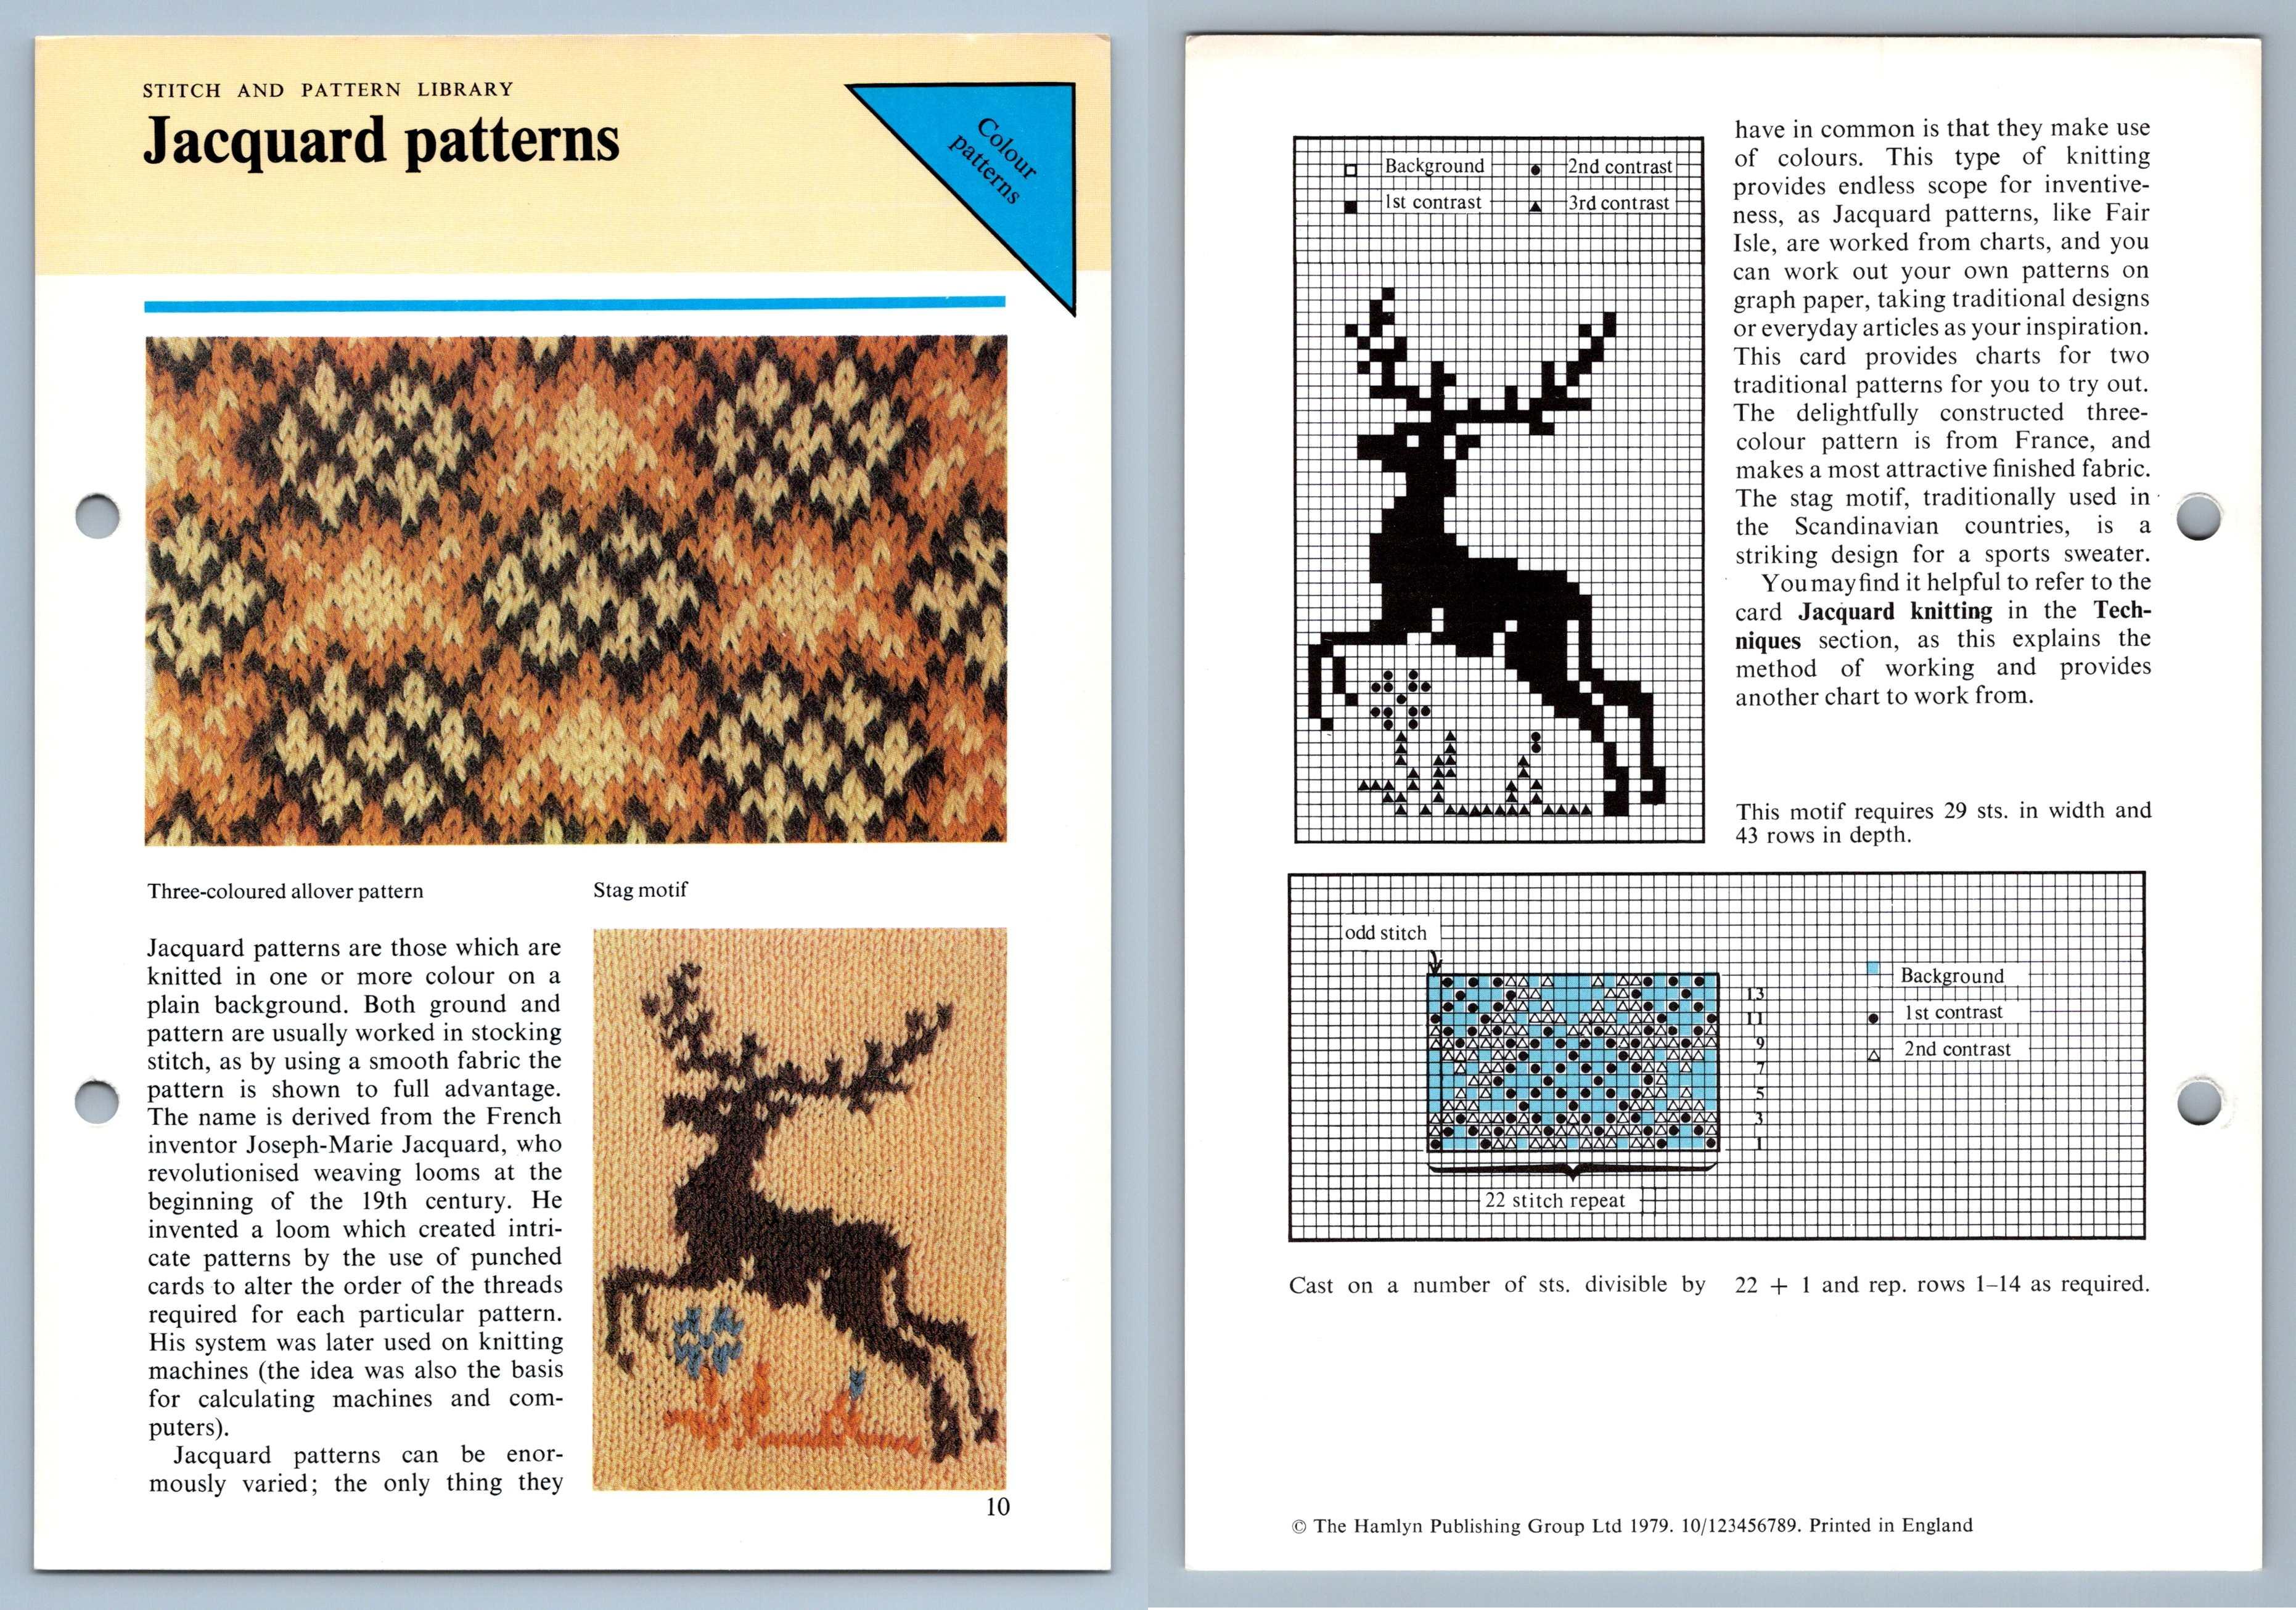 Modèles jacquard - point - 1979 carte d'instruction collection de tricot Odhams - Photo 1/1